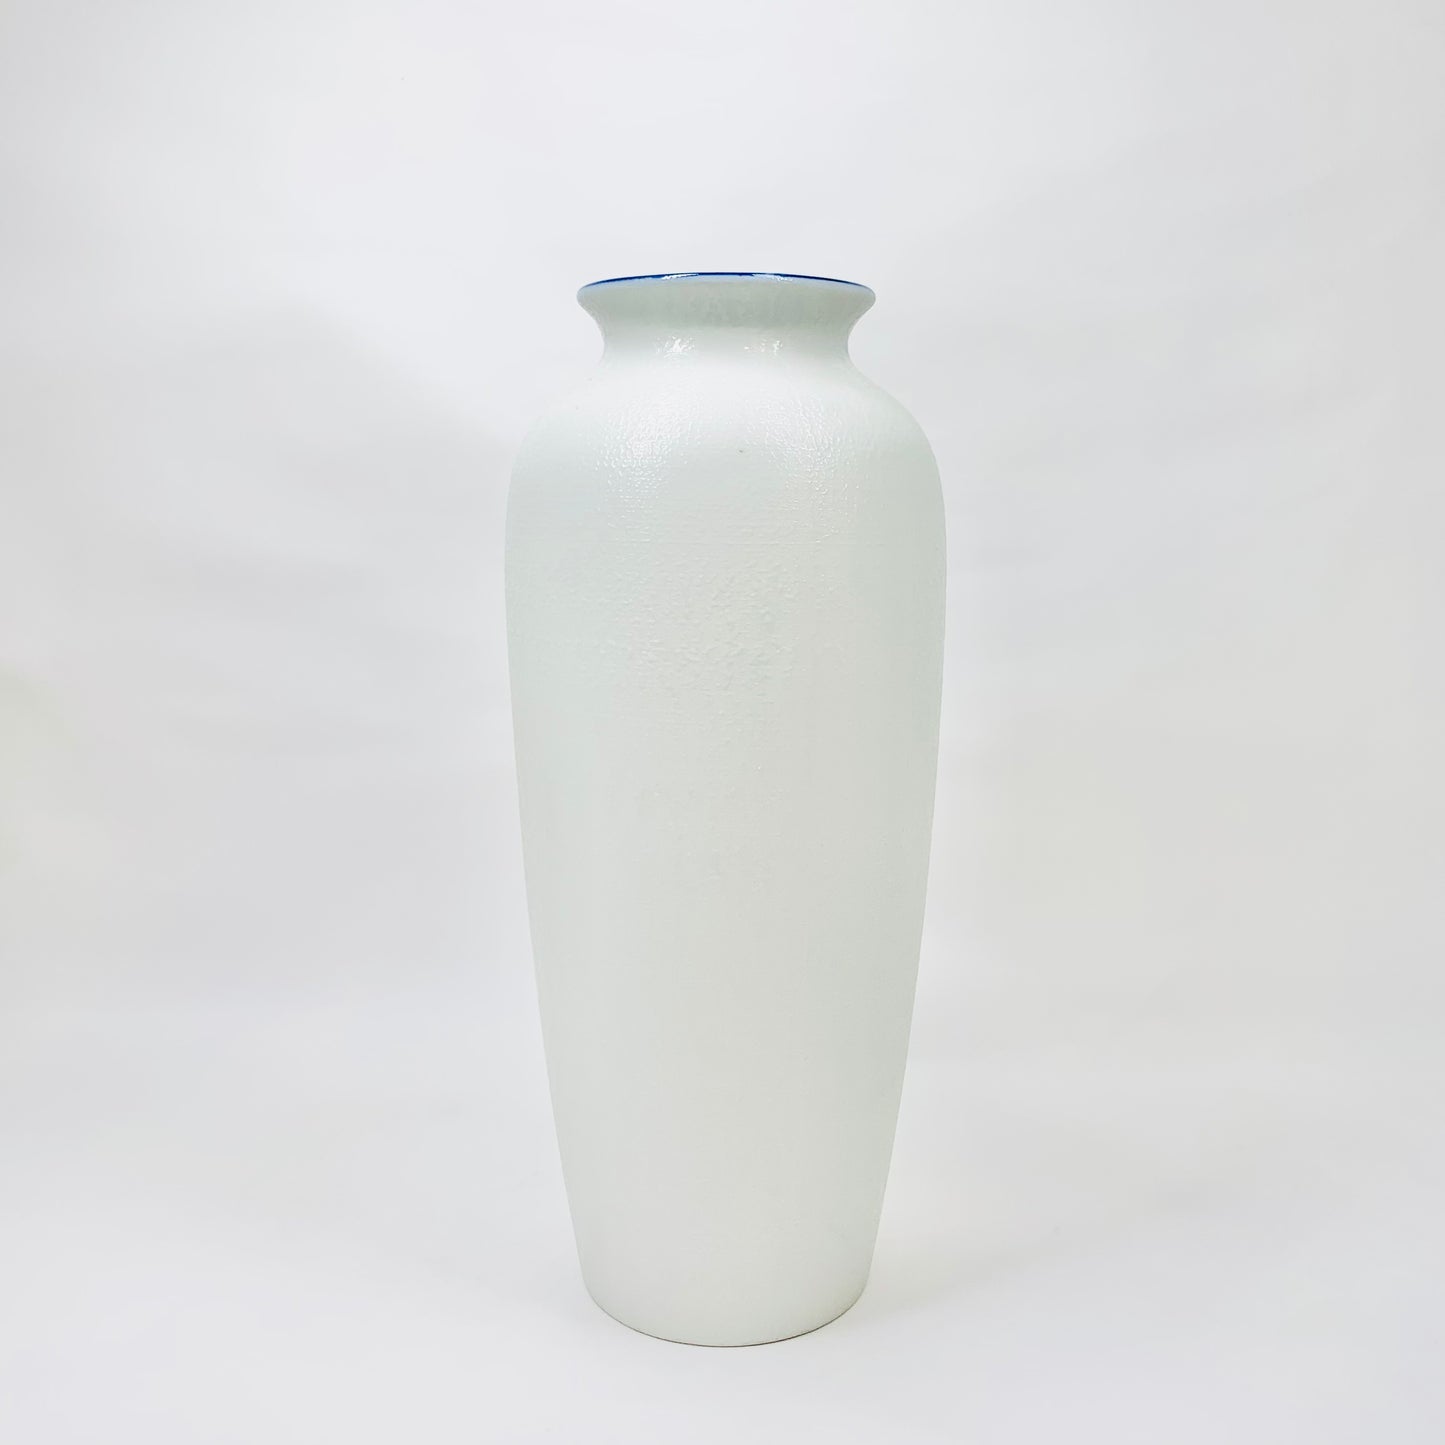 Midcentury hand painted Japanese white porcelain vase with blue sakura